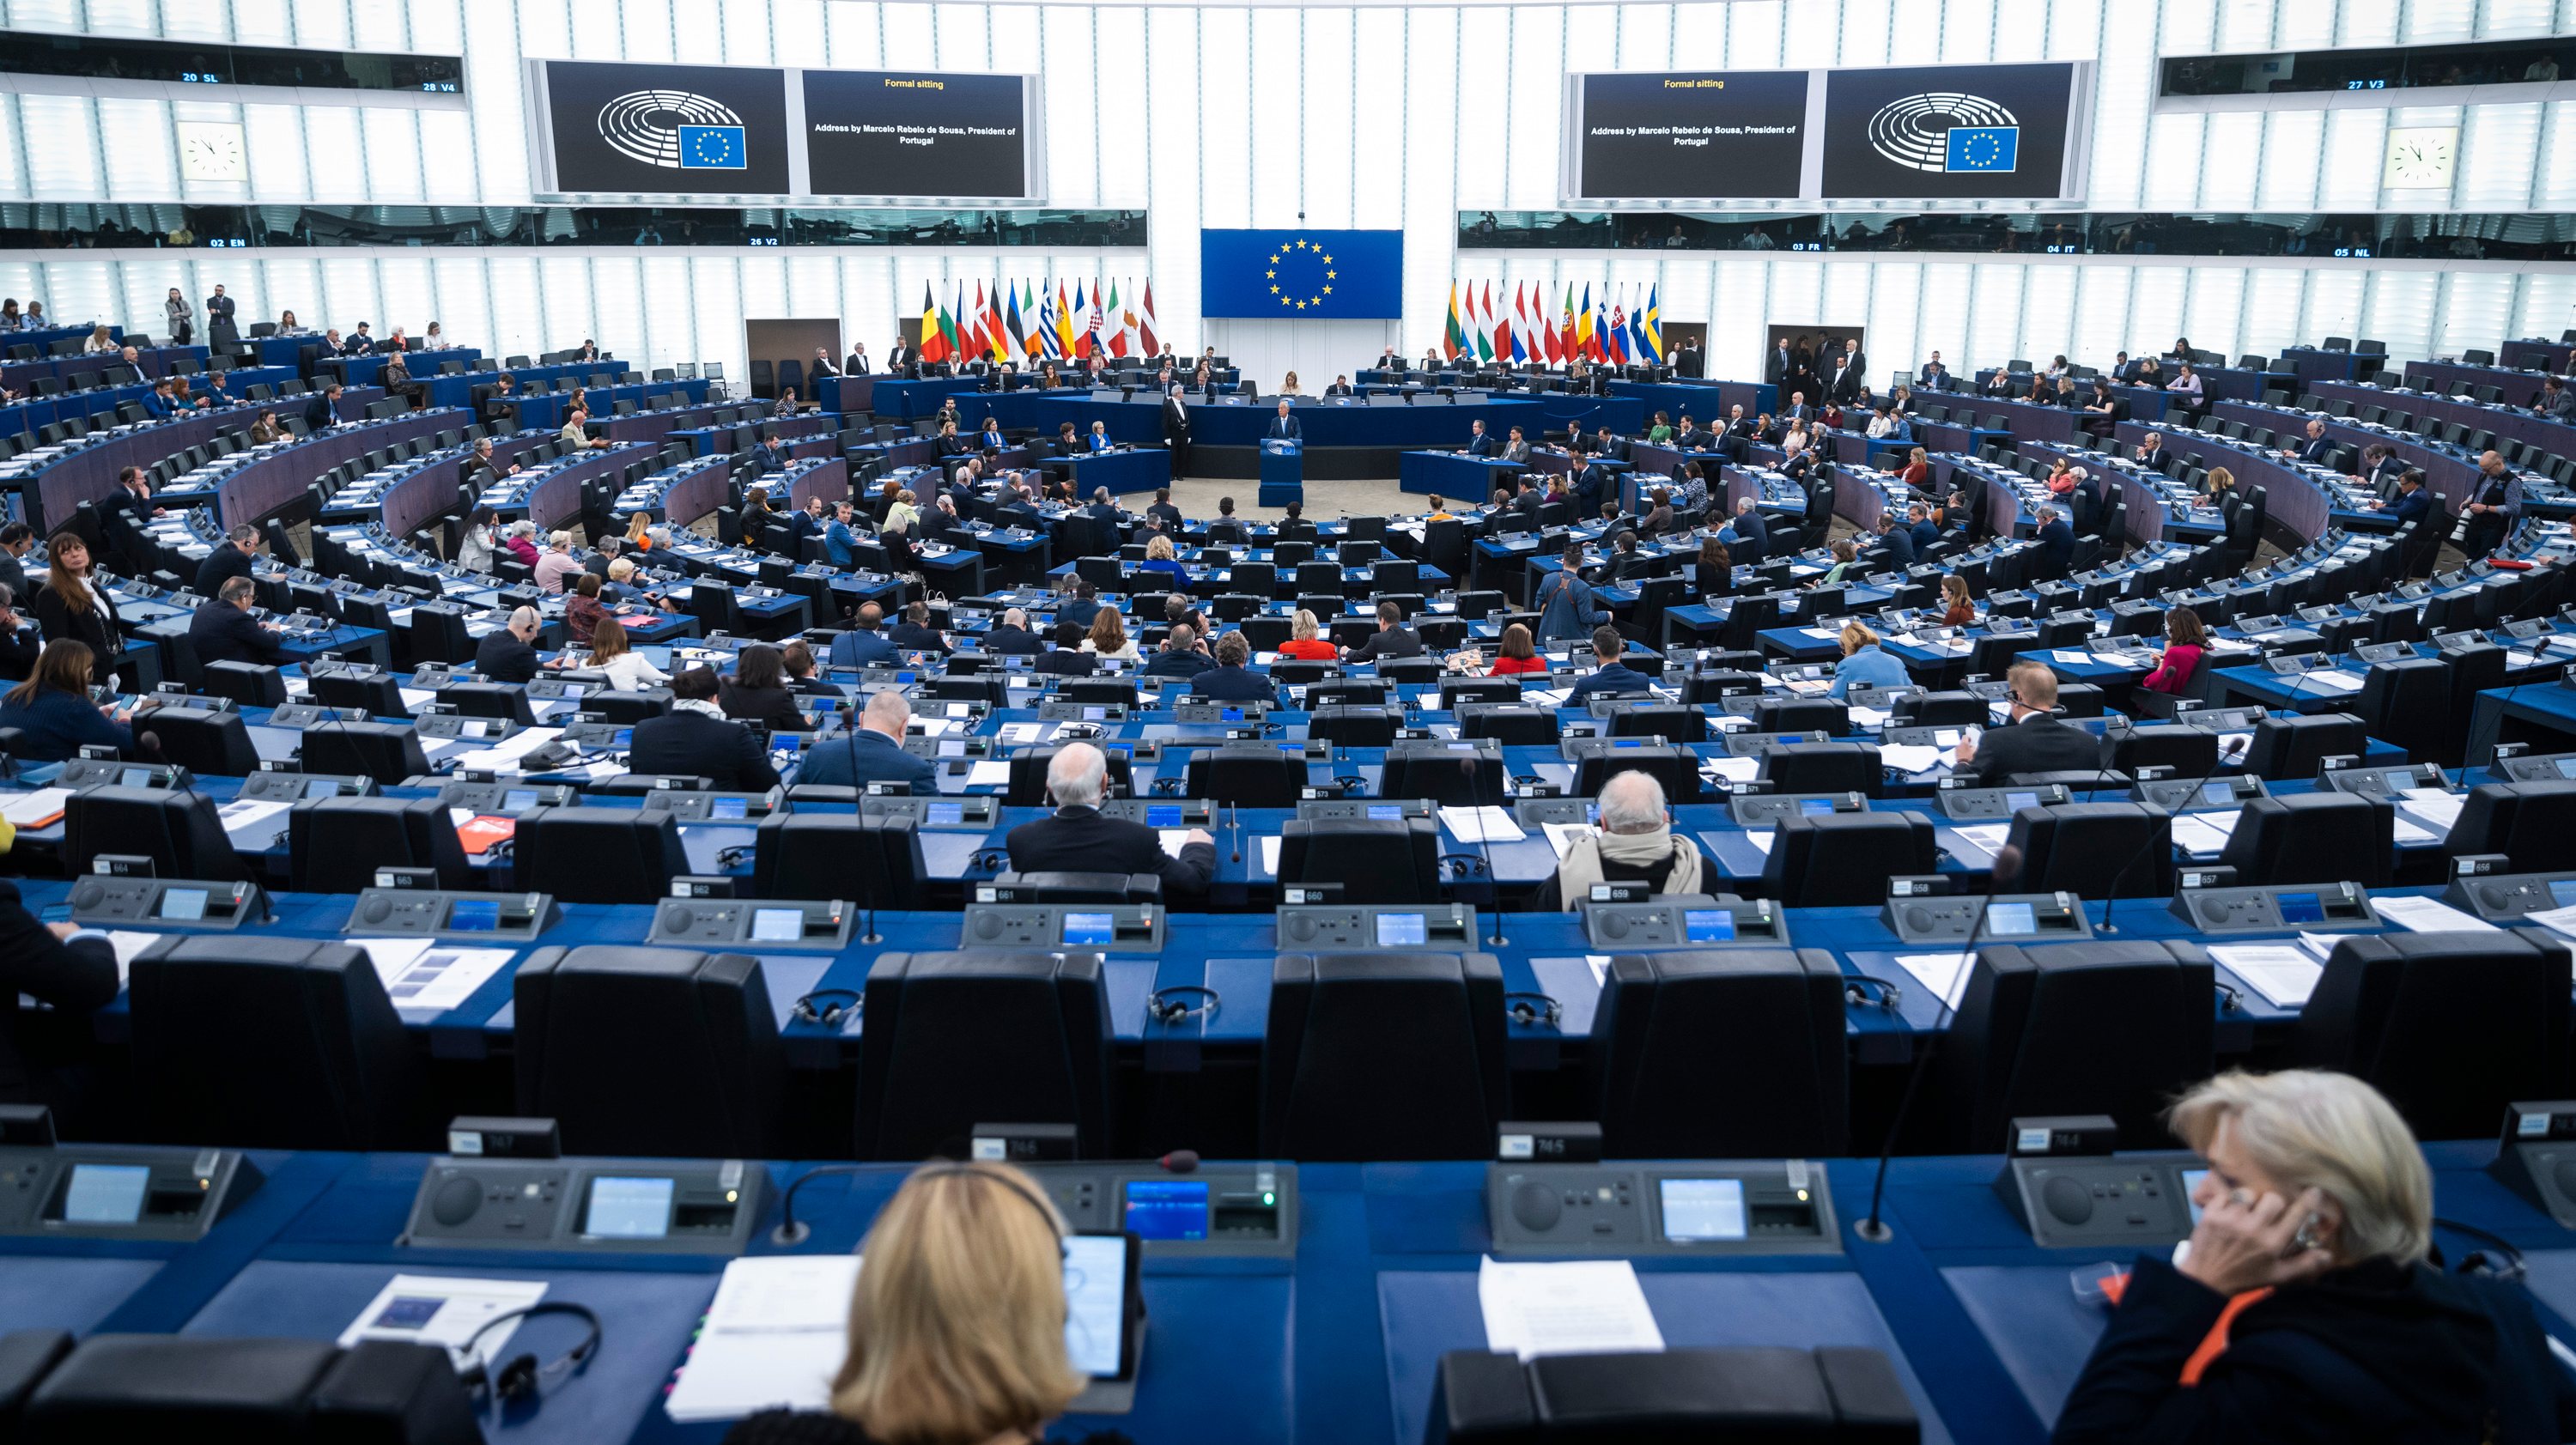 A lei tinha sido aprovada pelo Parlamento Europeu em fevereiro — com 329 votos a favor, 275 contra e 24 abstenções — mas acabou por não ir a votos para aprovação final depois da Hungria ter retirado o apoio